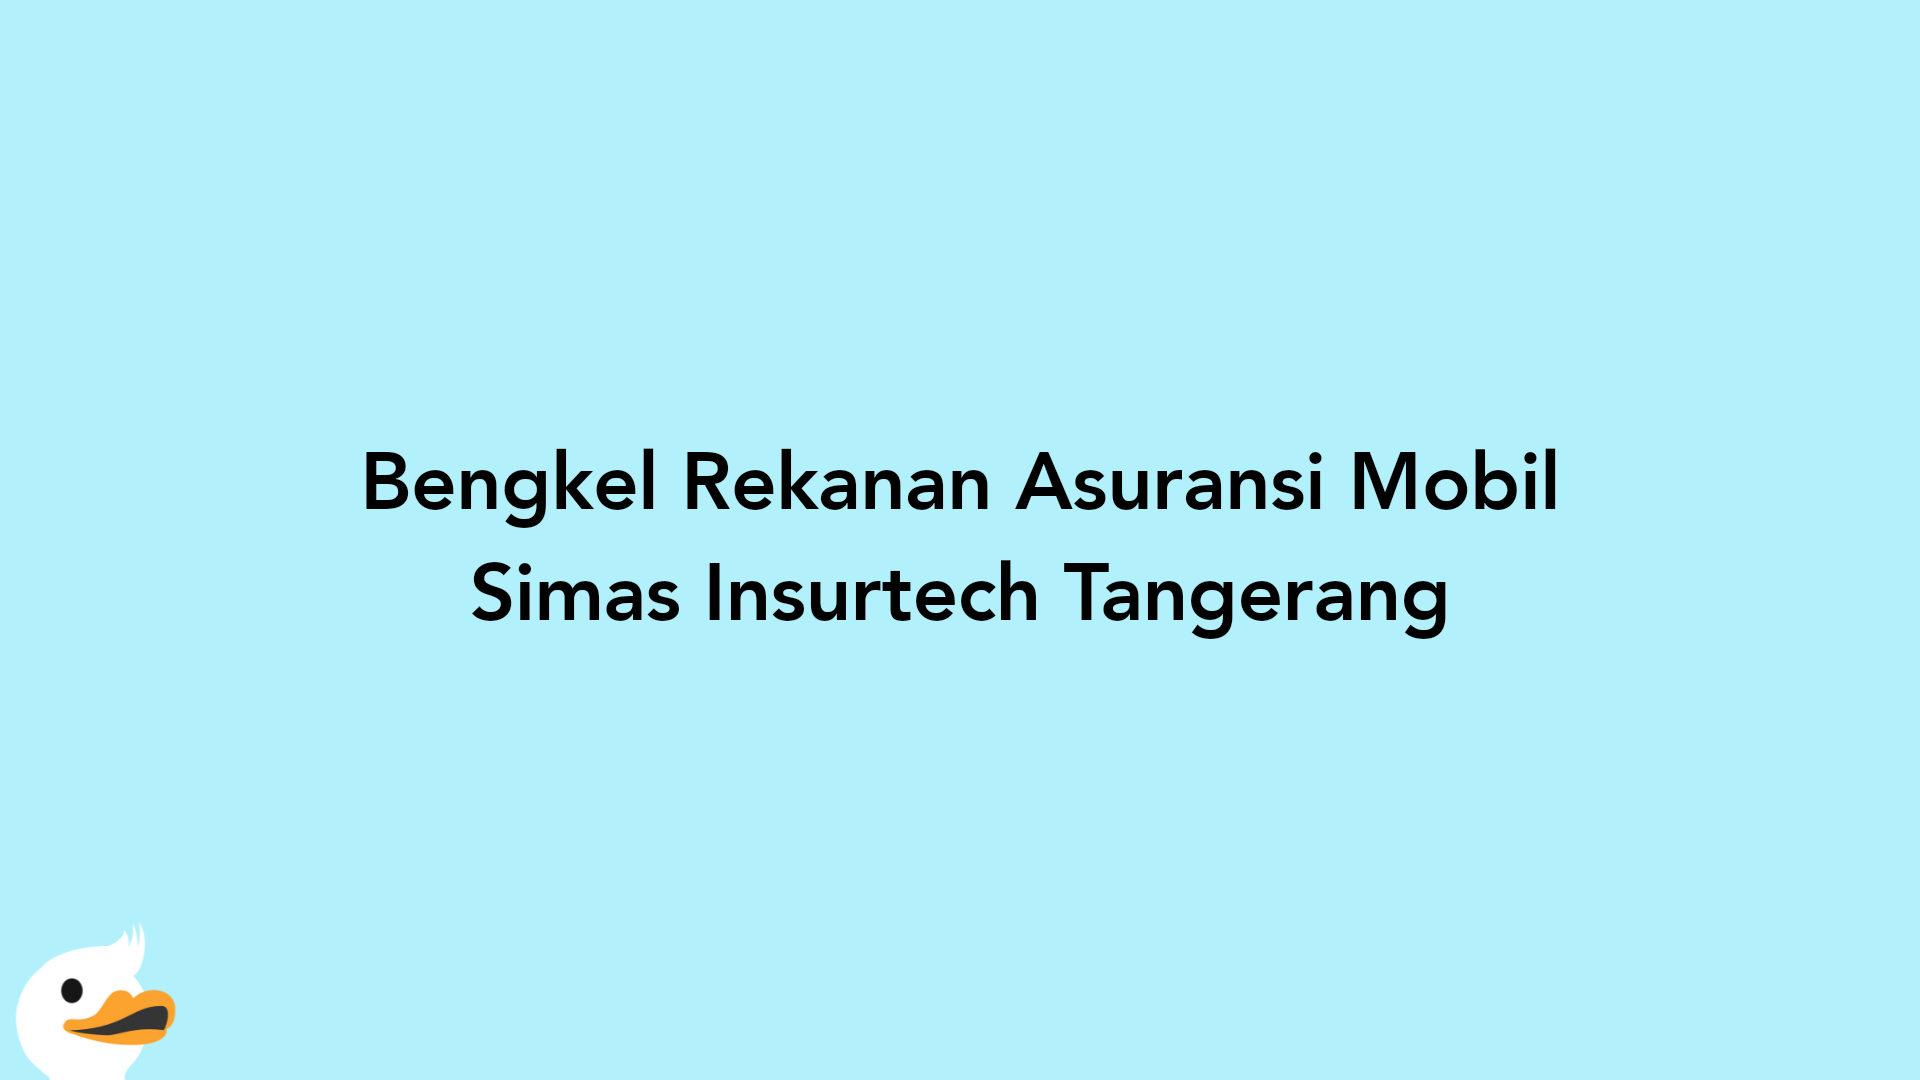 Bengkel Rekanan Asuransi Mobil Simas Insurtech Tangerang